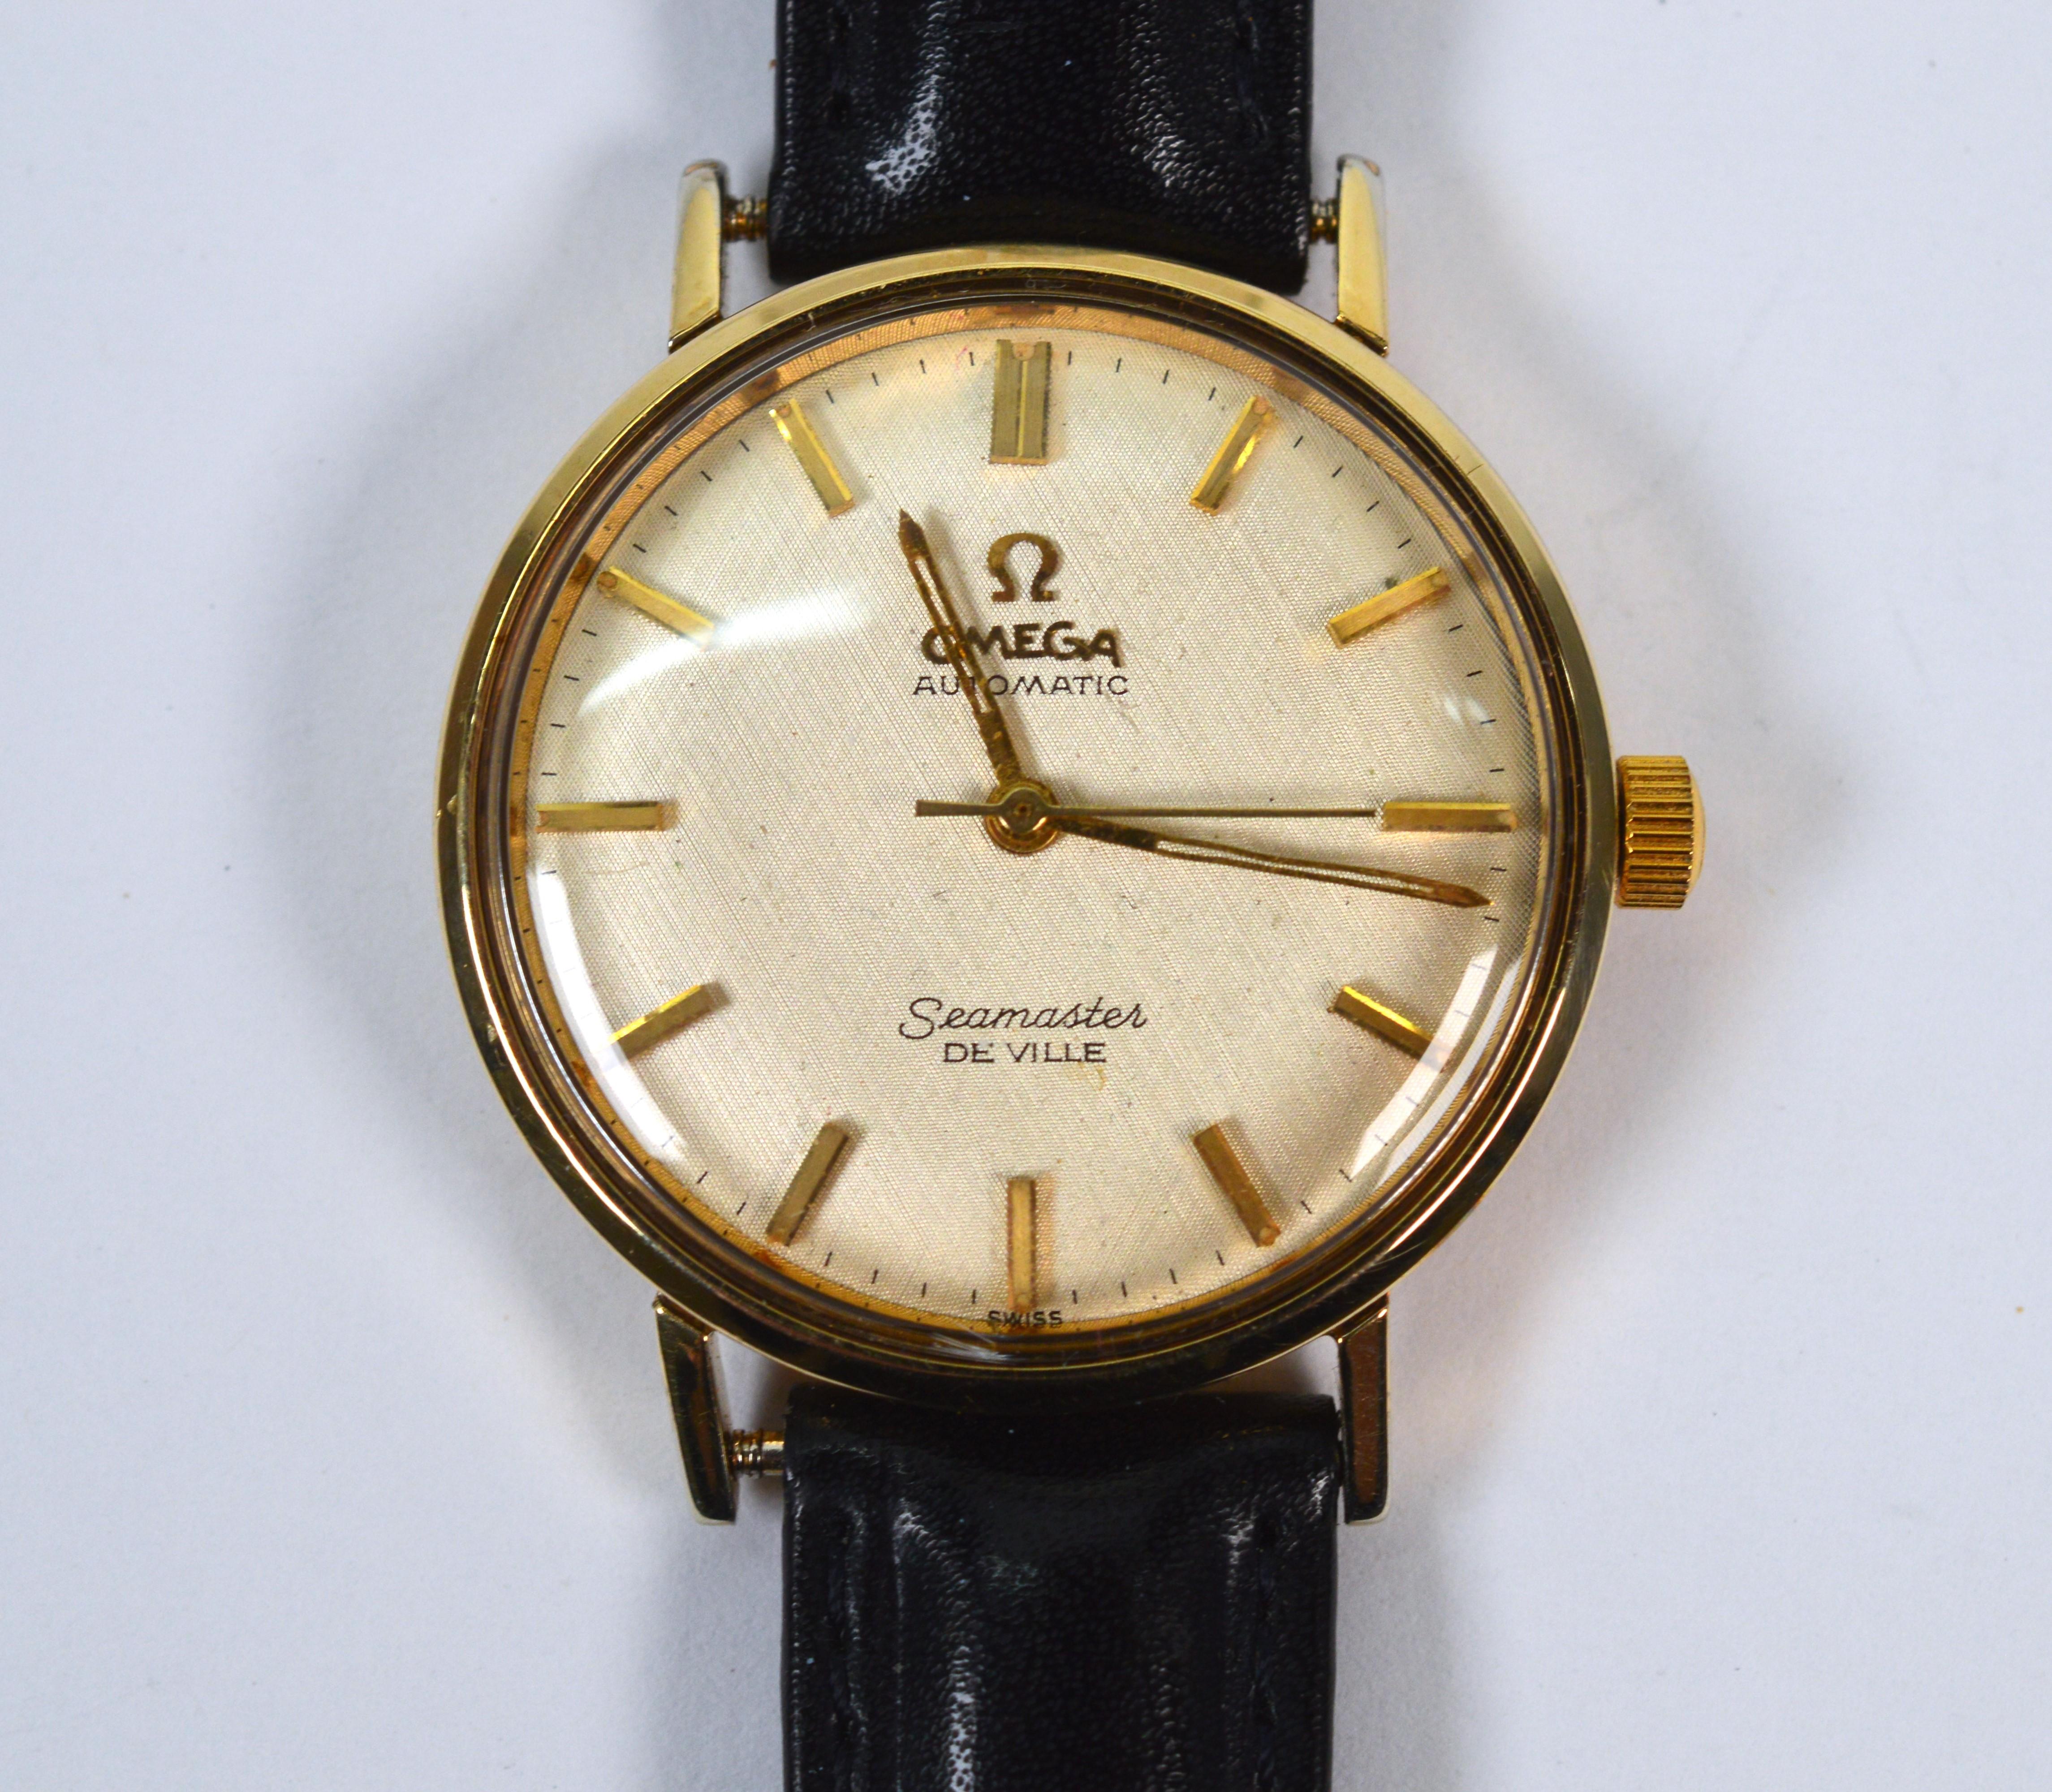 Immer stilvoll, ein Retro-Klassiker Omega Seamaster 563 De Ville Gold Filled Men's Wrist Watch. Diese schlanke 34-mm-Uhr, die in den 1950-60er Jahren sehr beliebt war, zeichnet sich durch klare Linien aus und ist leicht und angenehm zu tragen. Das